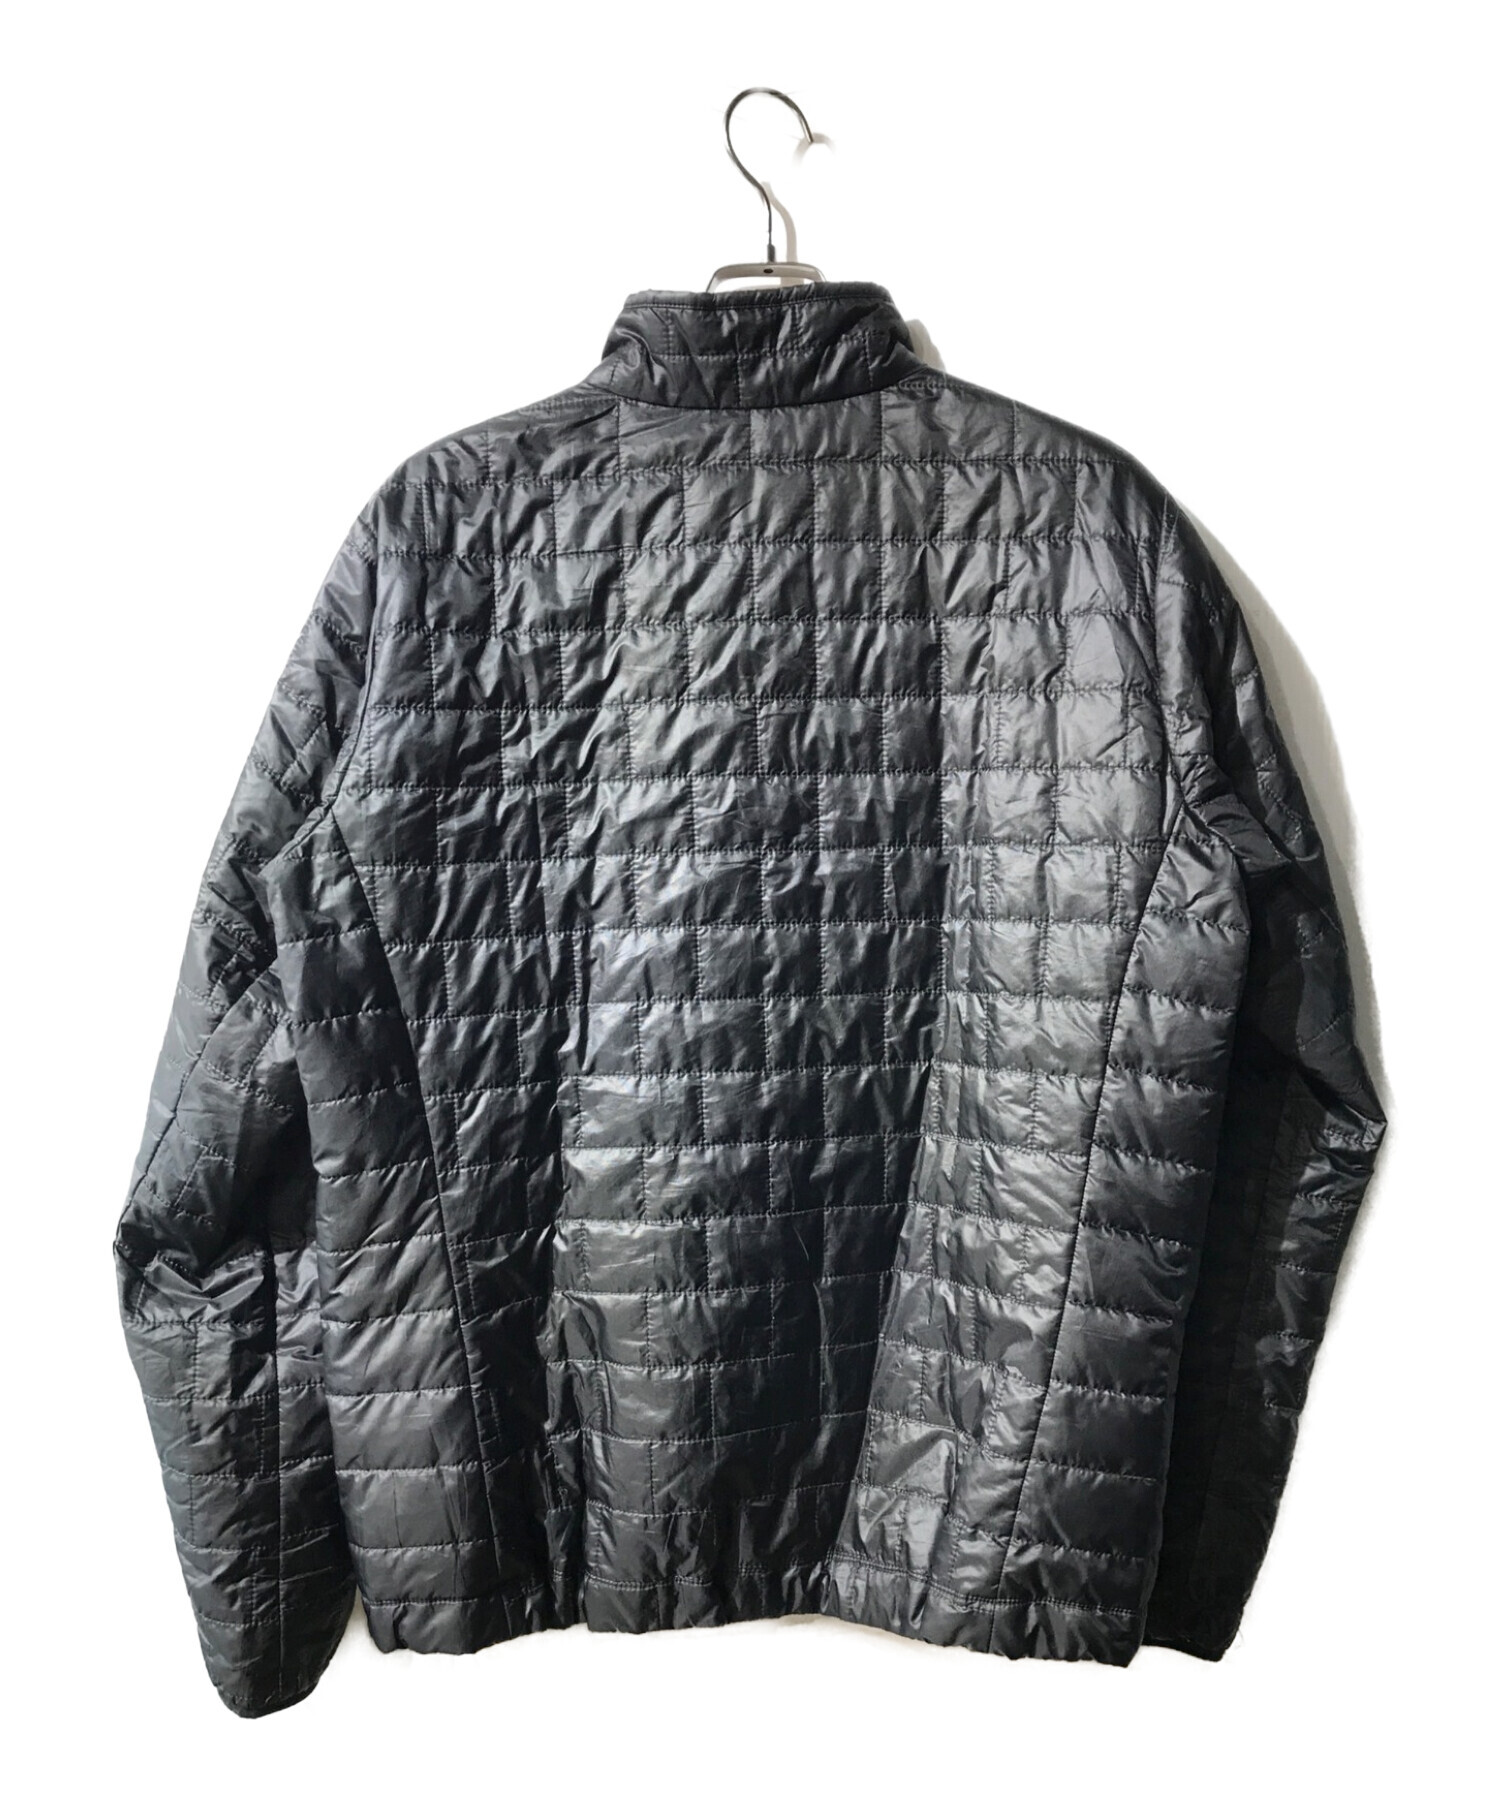 Patagonia (パタゴニア) ナノパフジャケット ブラック サイズ:L